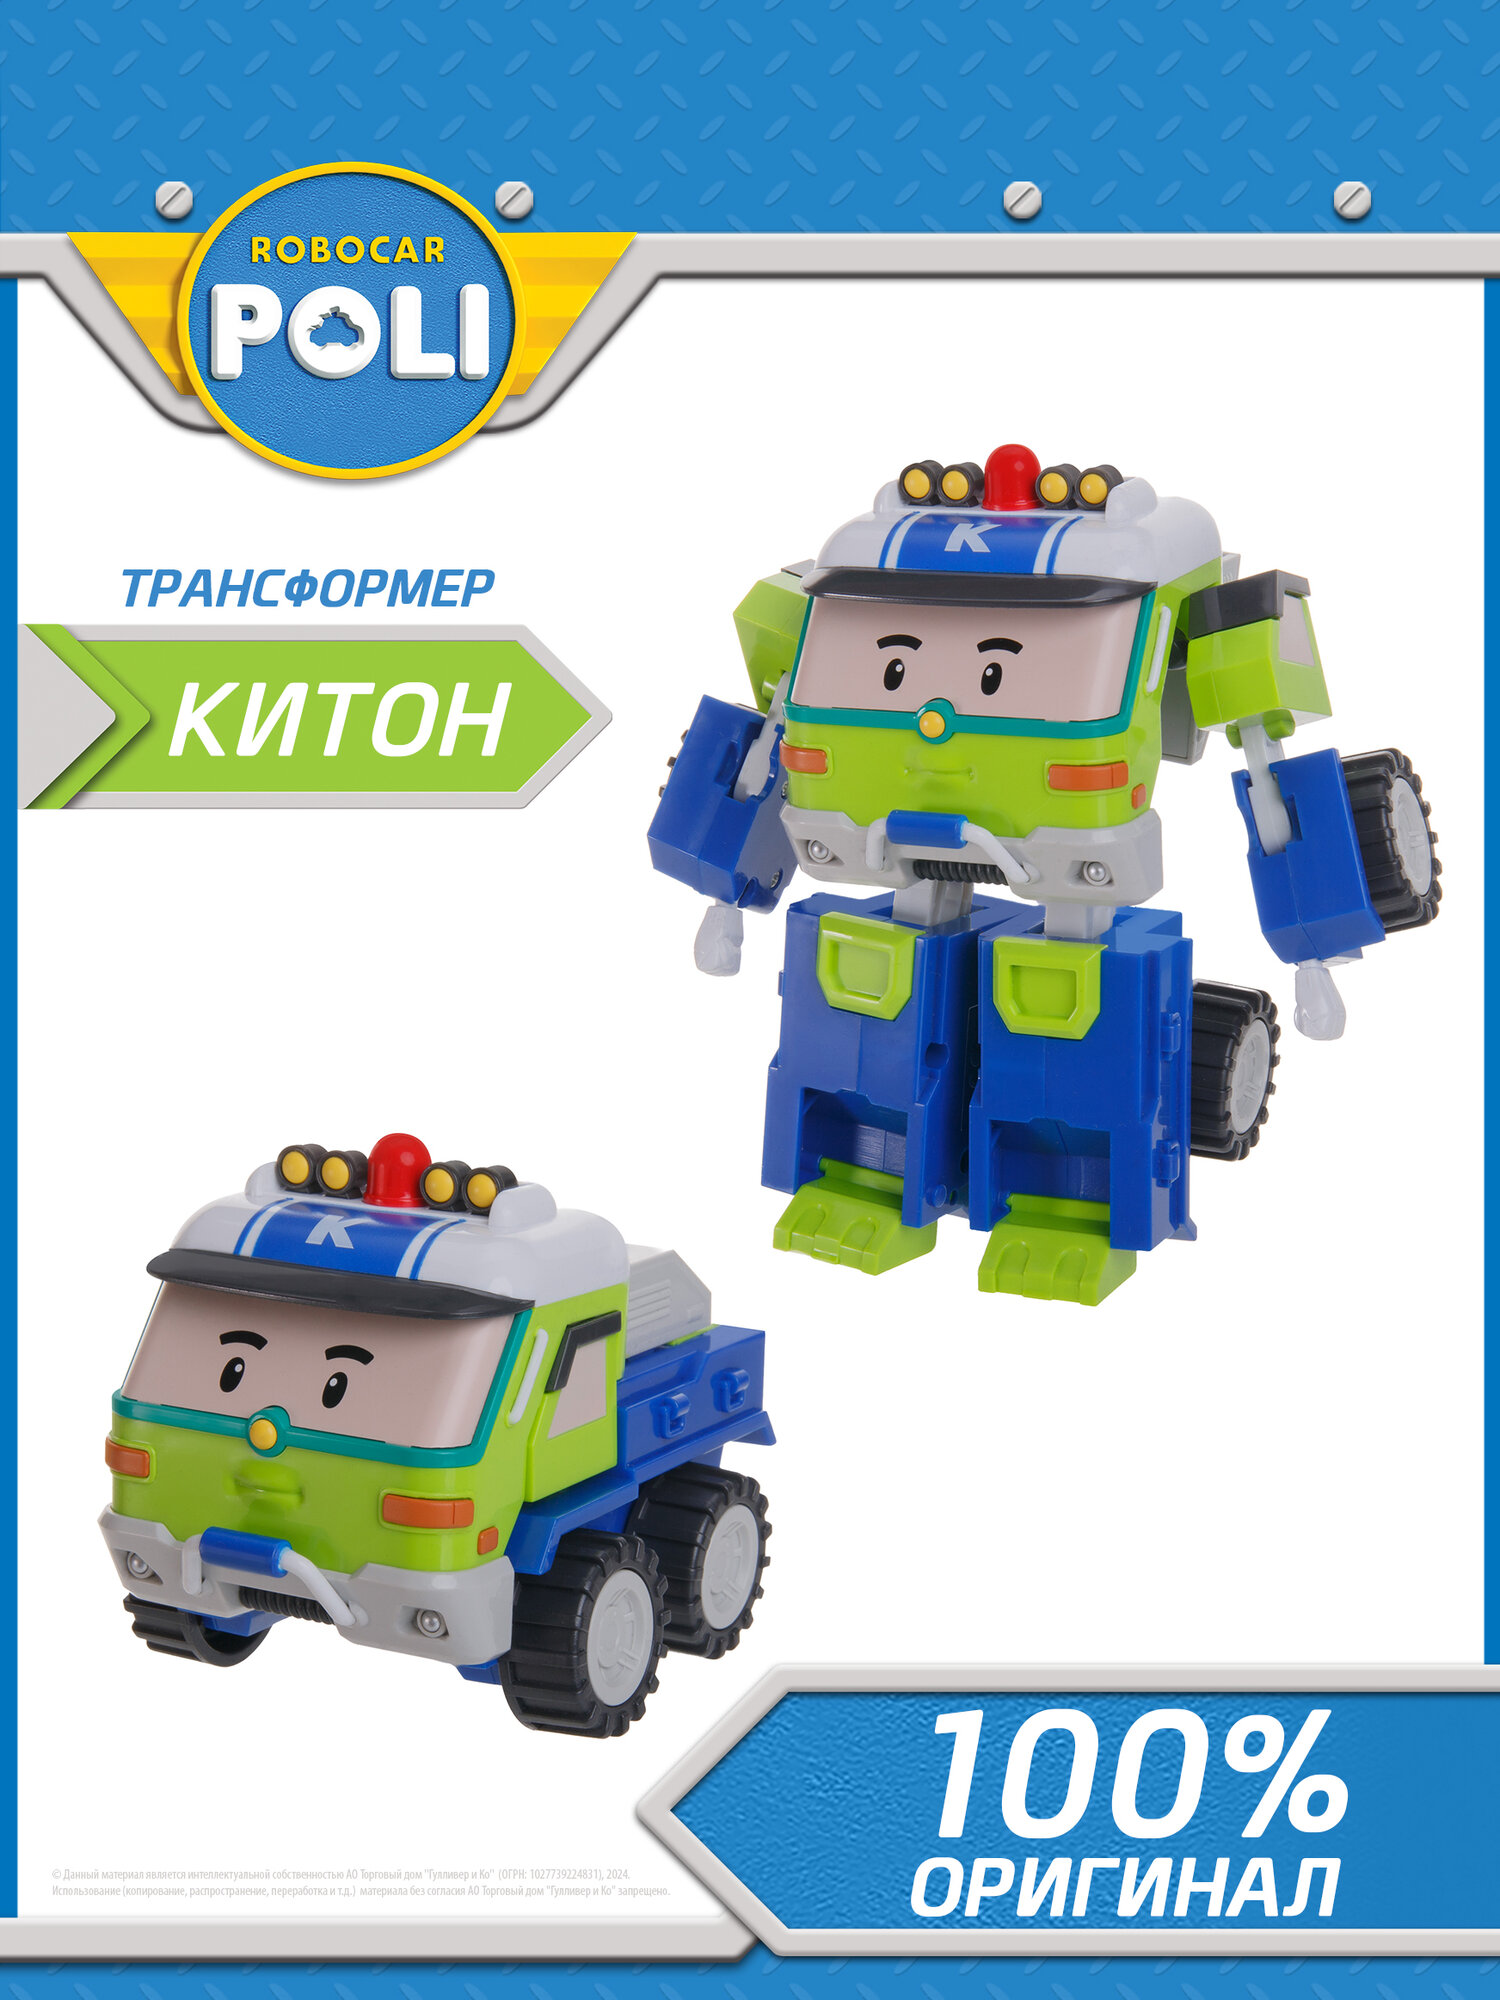 Робокар поли, Робот-трансформер Китон 10 см, Robocar POLI